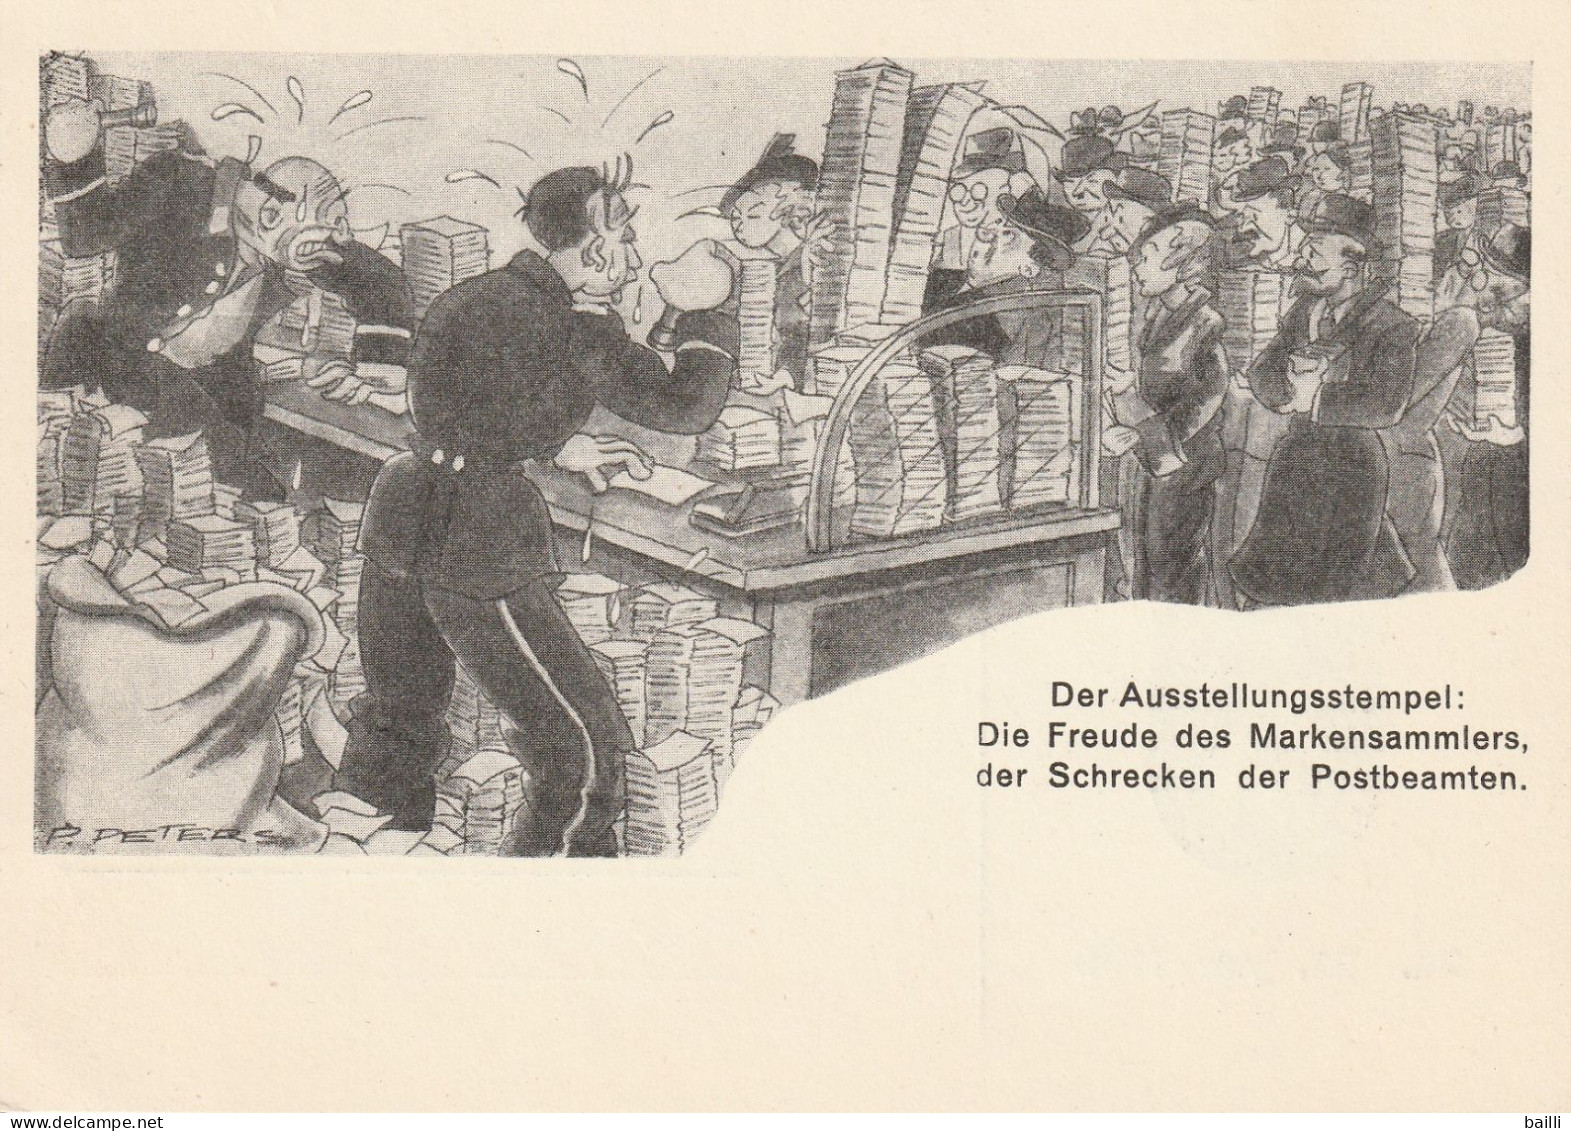 Allemagne Entier Postal Illustré Düsseldorf 1936 - Enteros Postales Privados